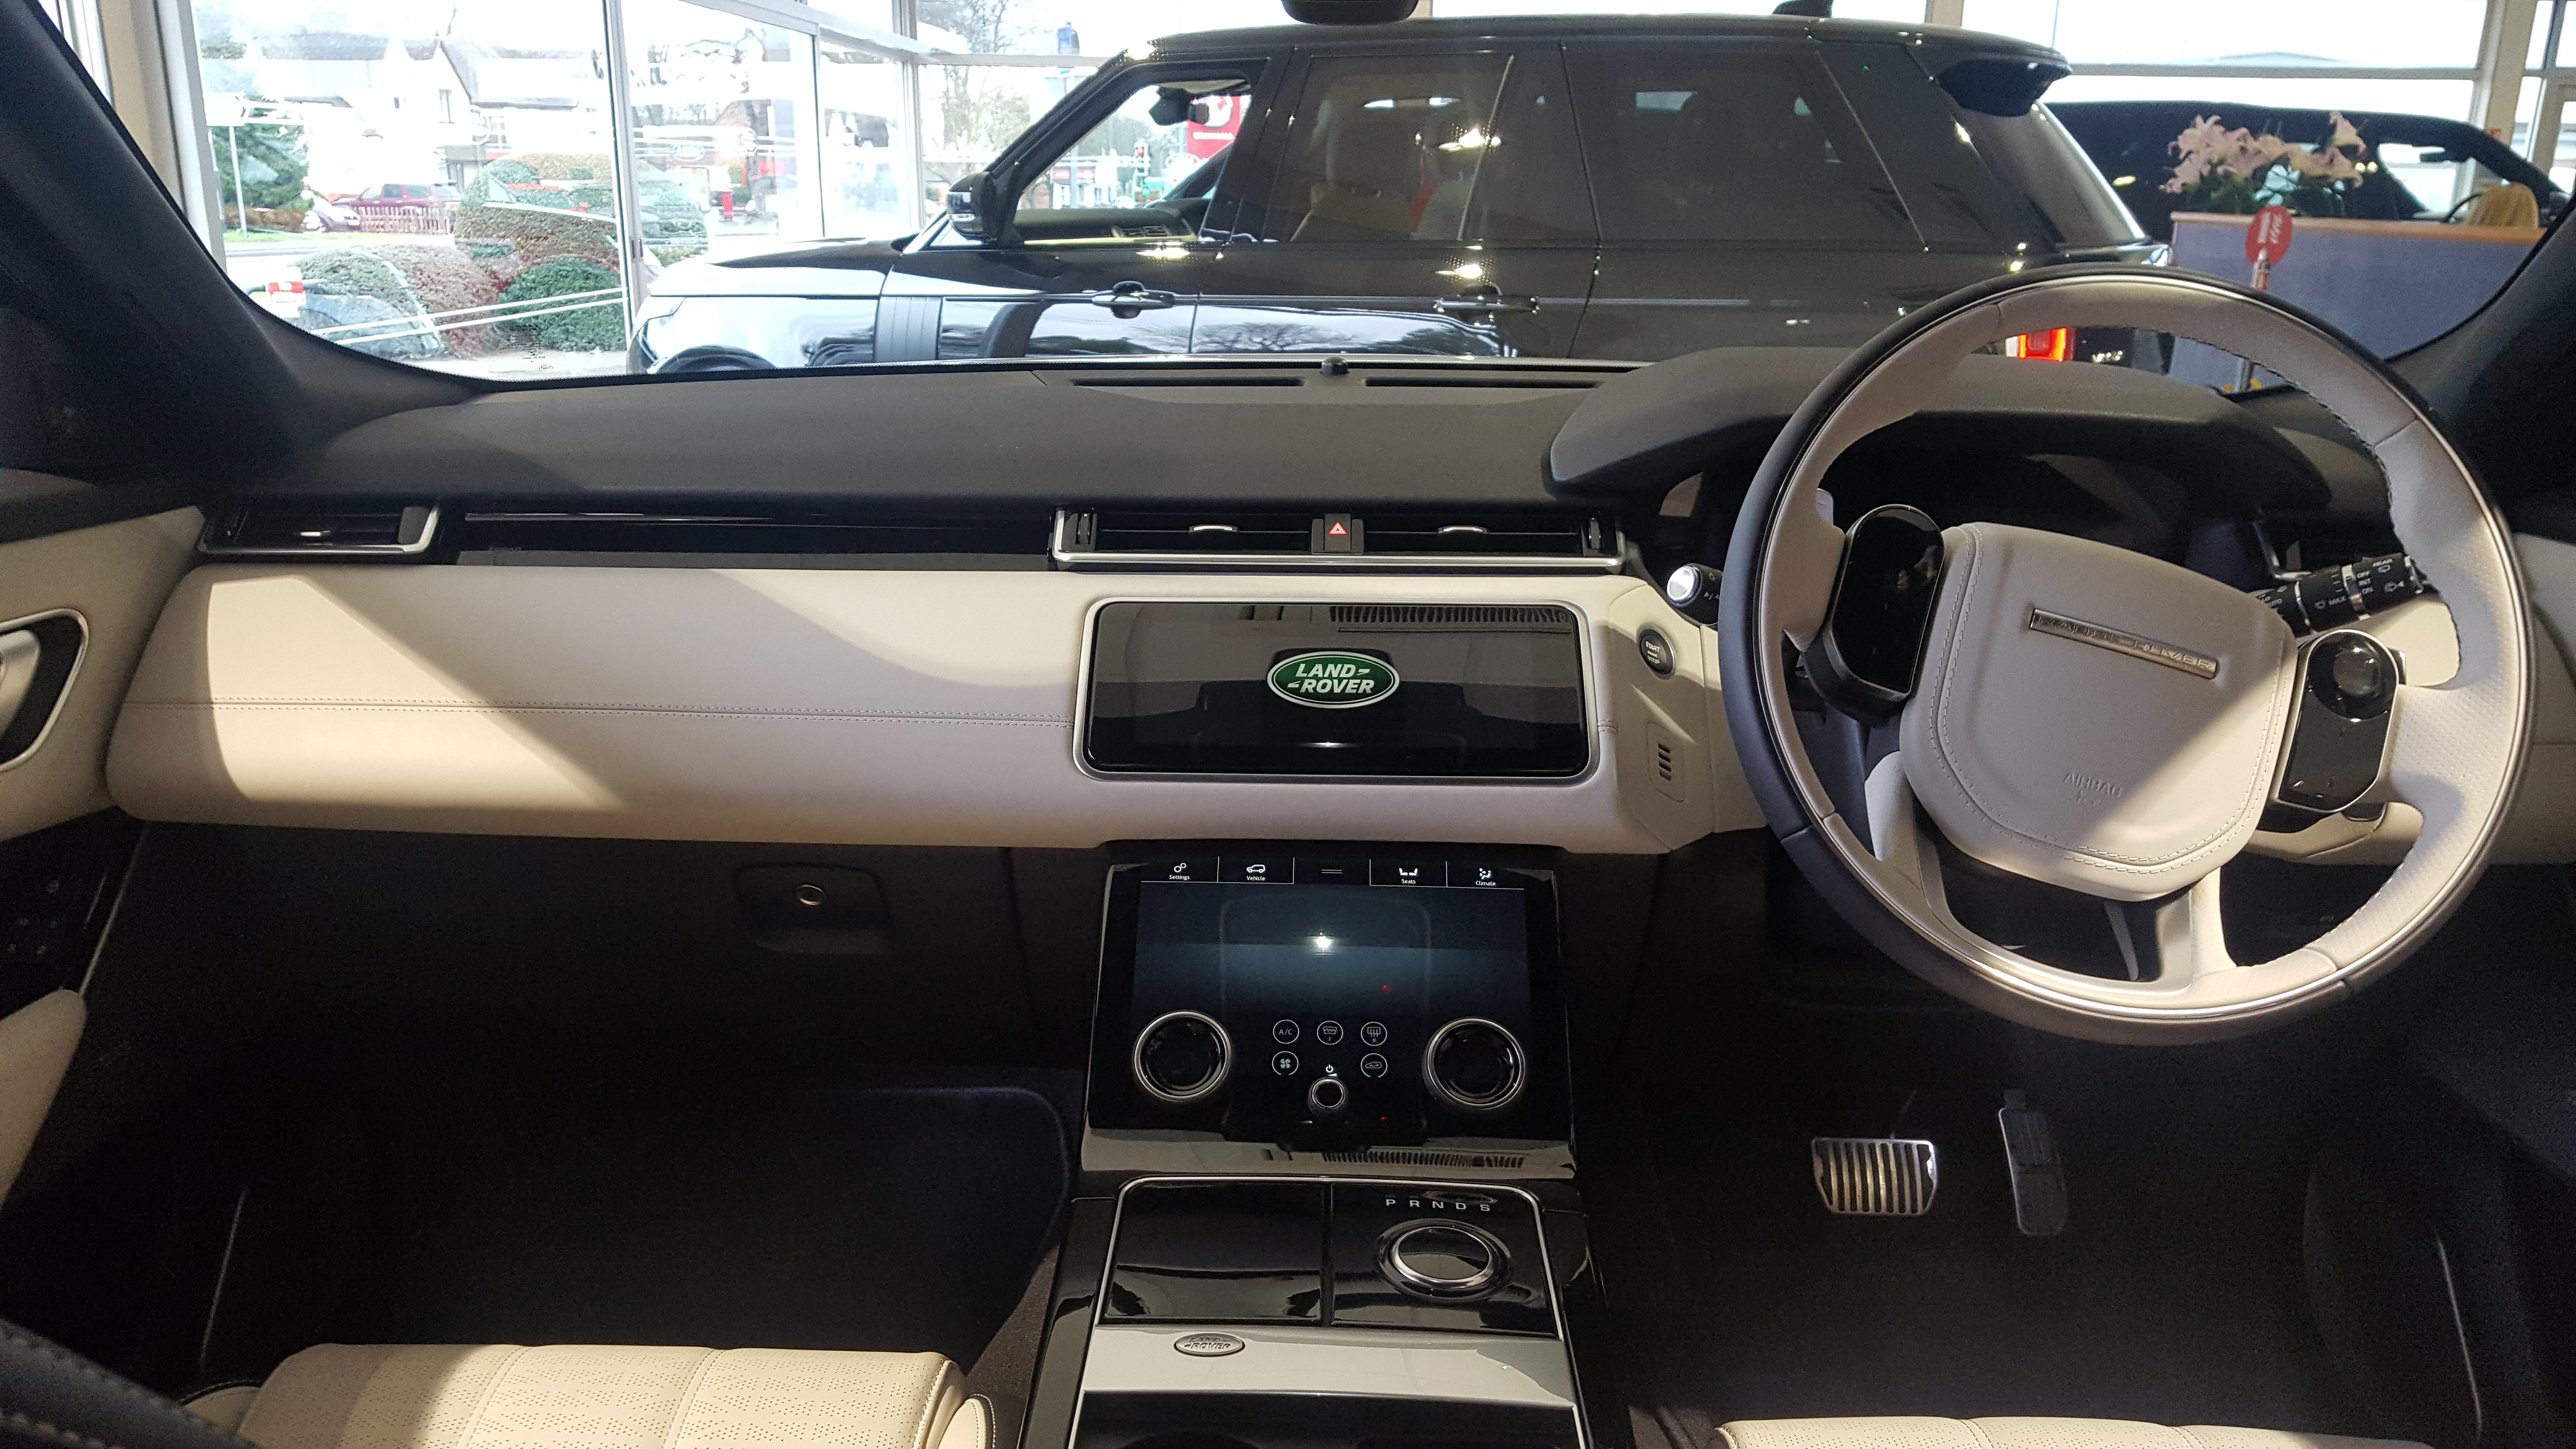 Range Rover Velar Images Interior  : Range Rover Velar Leads The Way In Progressive Design.